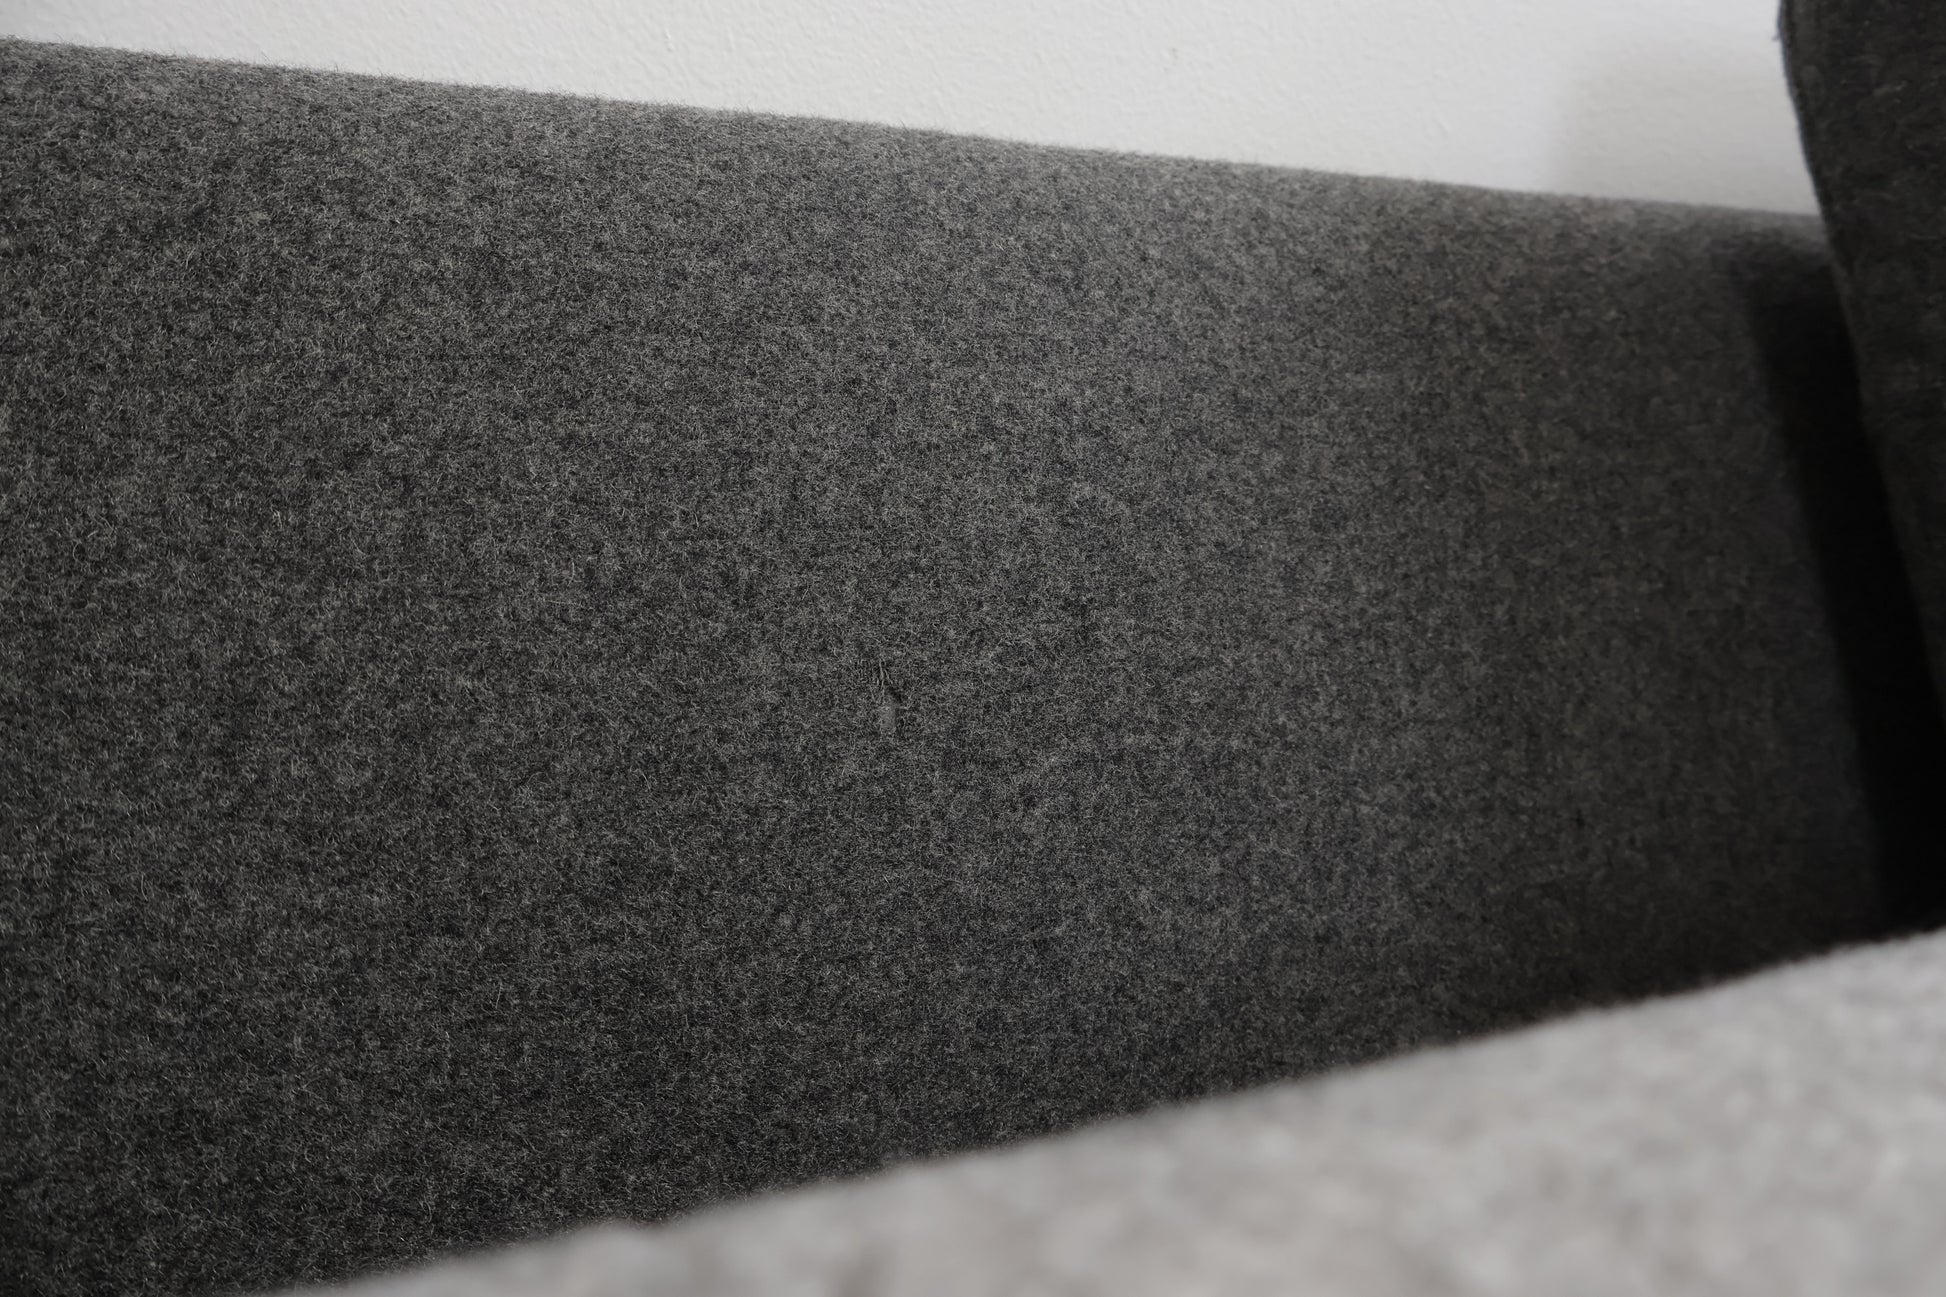 Nyrenset | Mørk grå Bolia Vela 2,5-seter sofa i ullstoff med puff